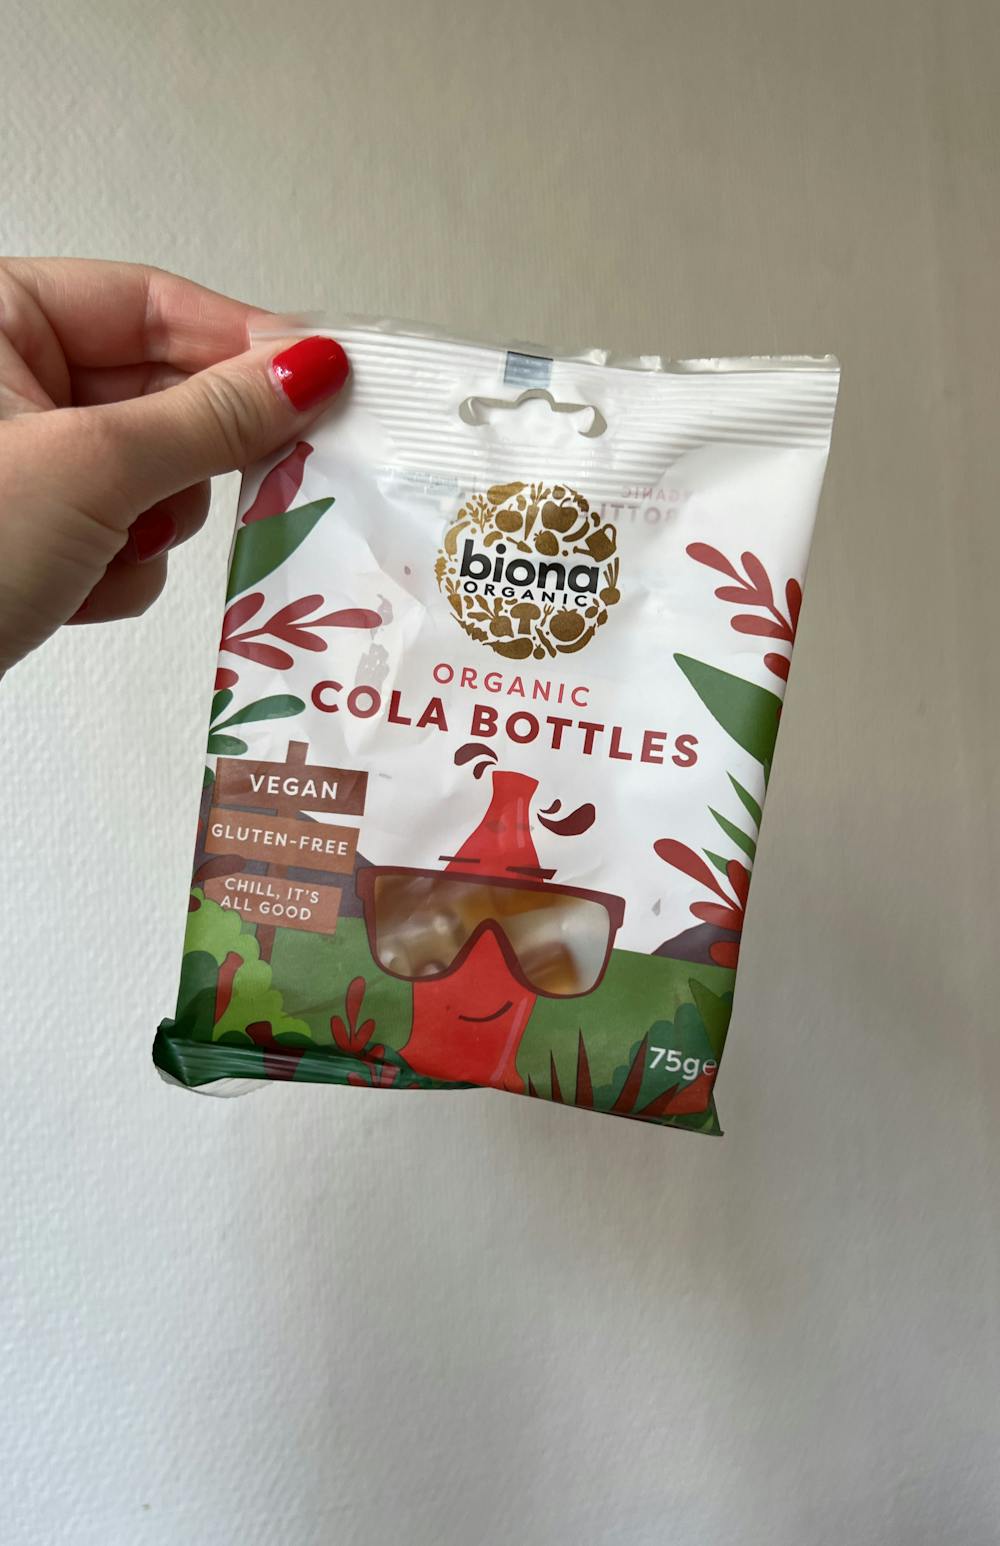 Organic cola bottles, Biona Organic